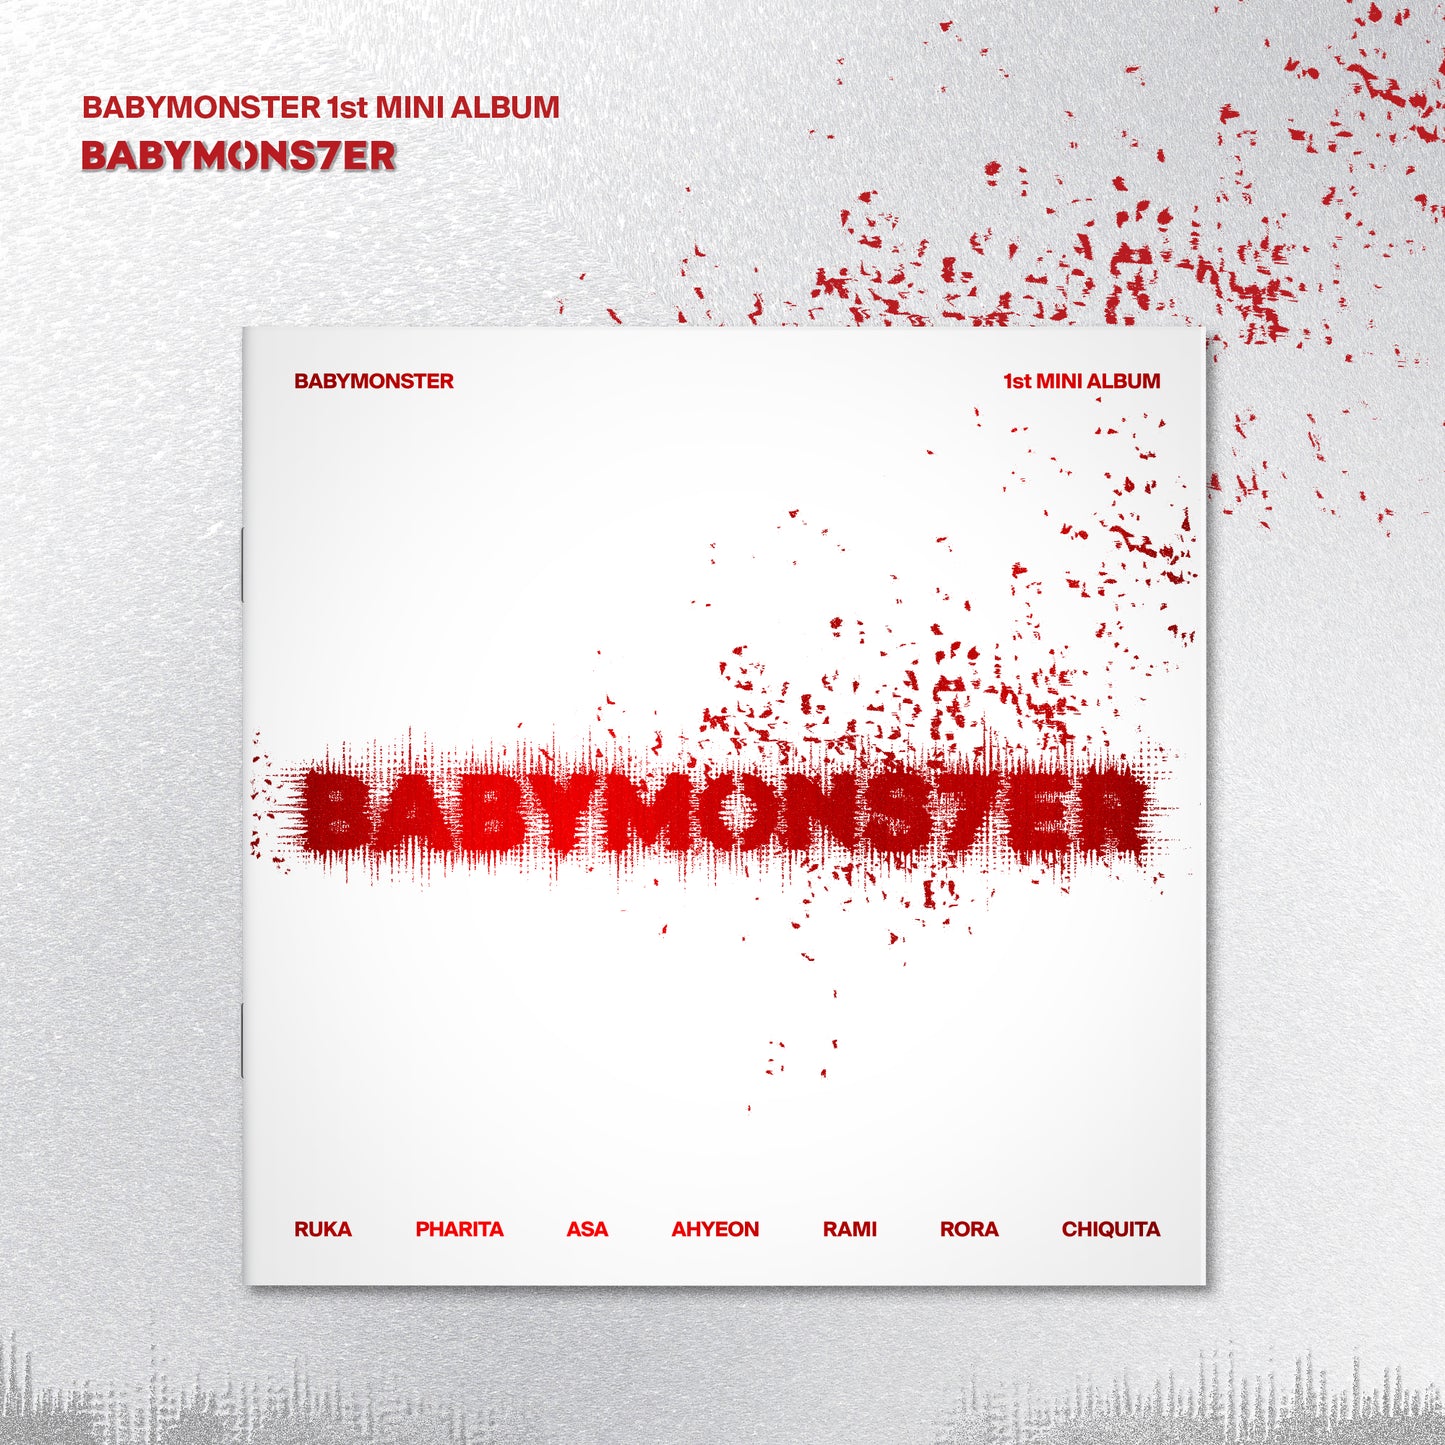 BABYMONSTER - 1ST MINI ALBUM [BABYMONS7ER] PHOTOBOOK VER.